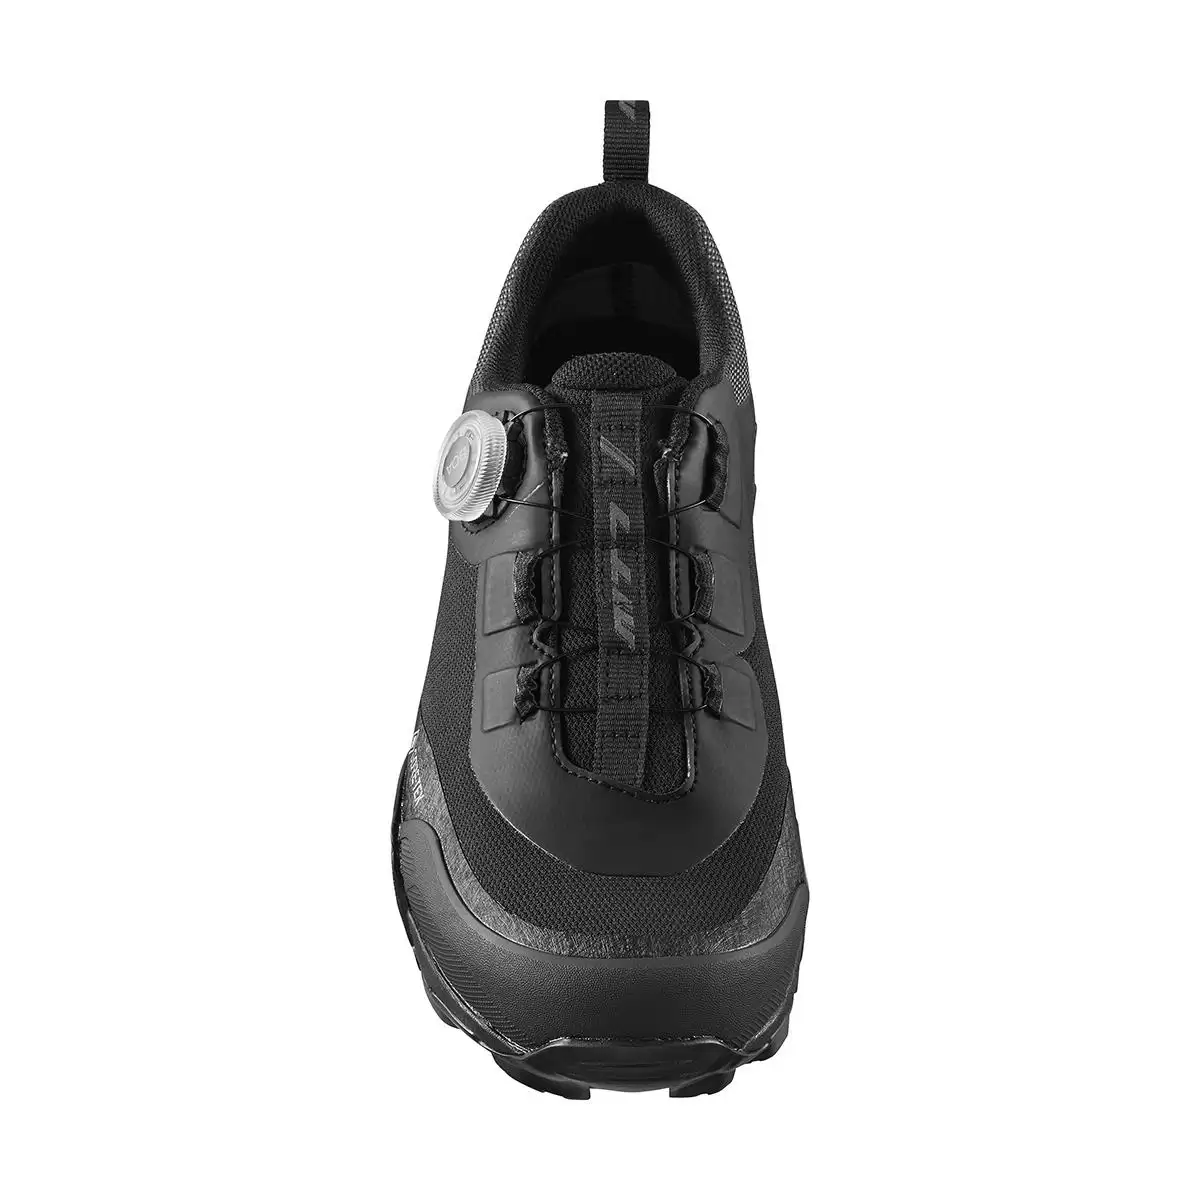 MTB Shoes SH-MT701GTX MT701 Black Size 45 #1